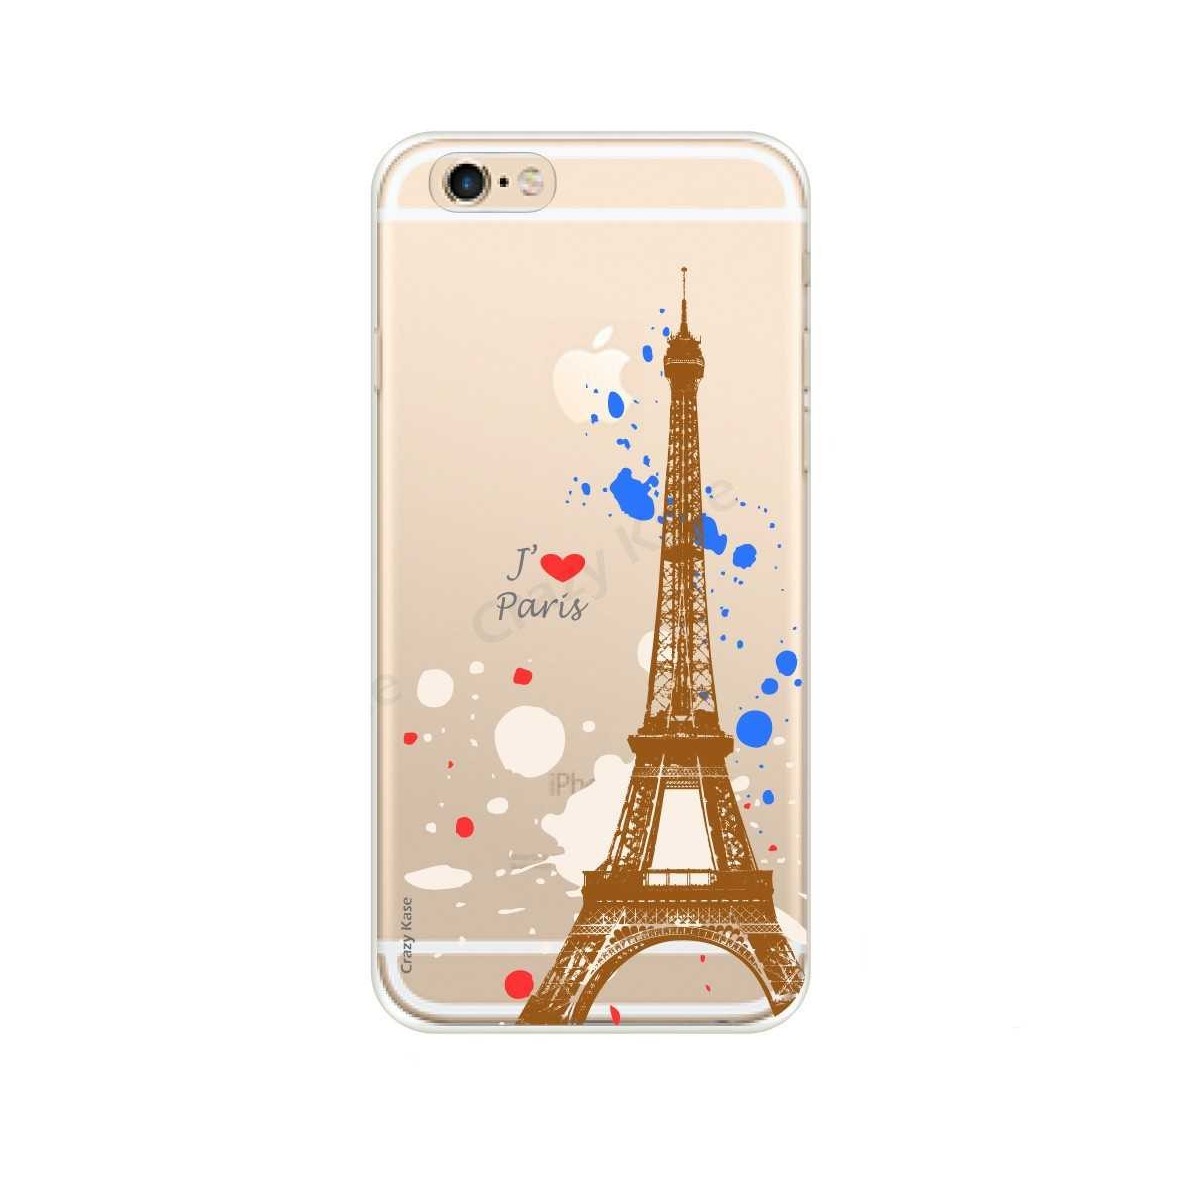 Coque compatible iPhone 6 Plus / 6s Plus souple Paris -  Crazy Kase